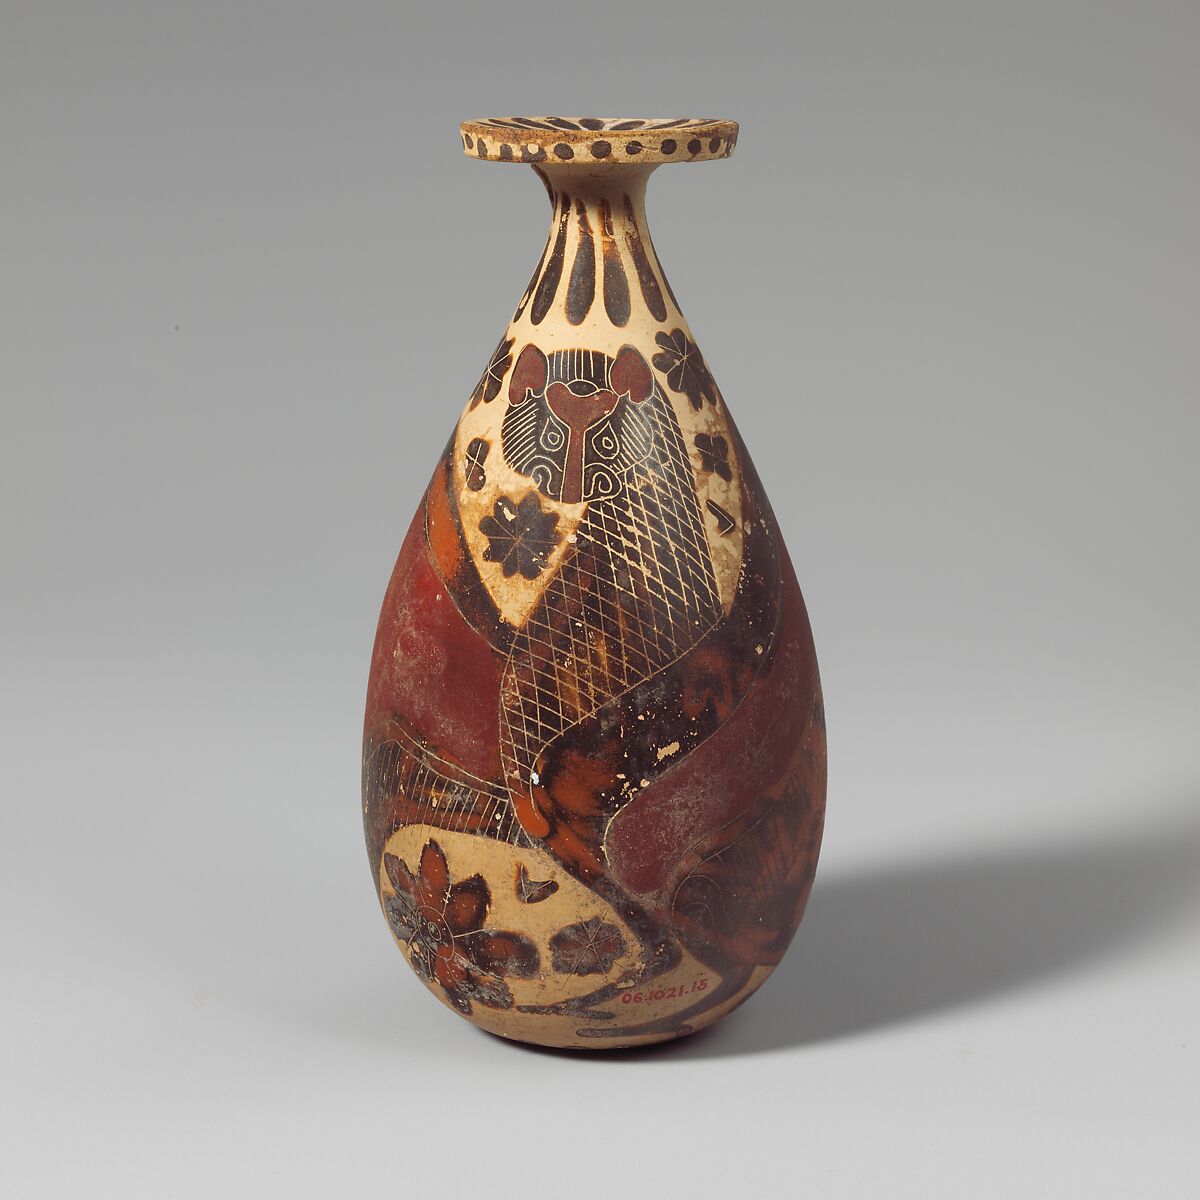 Terracotta alabastron (perfume vase), Terracotta, Greek, Corinthian 